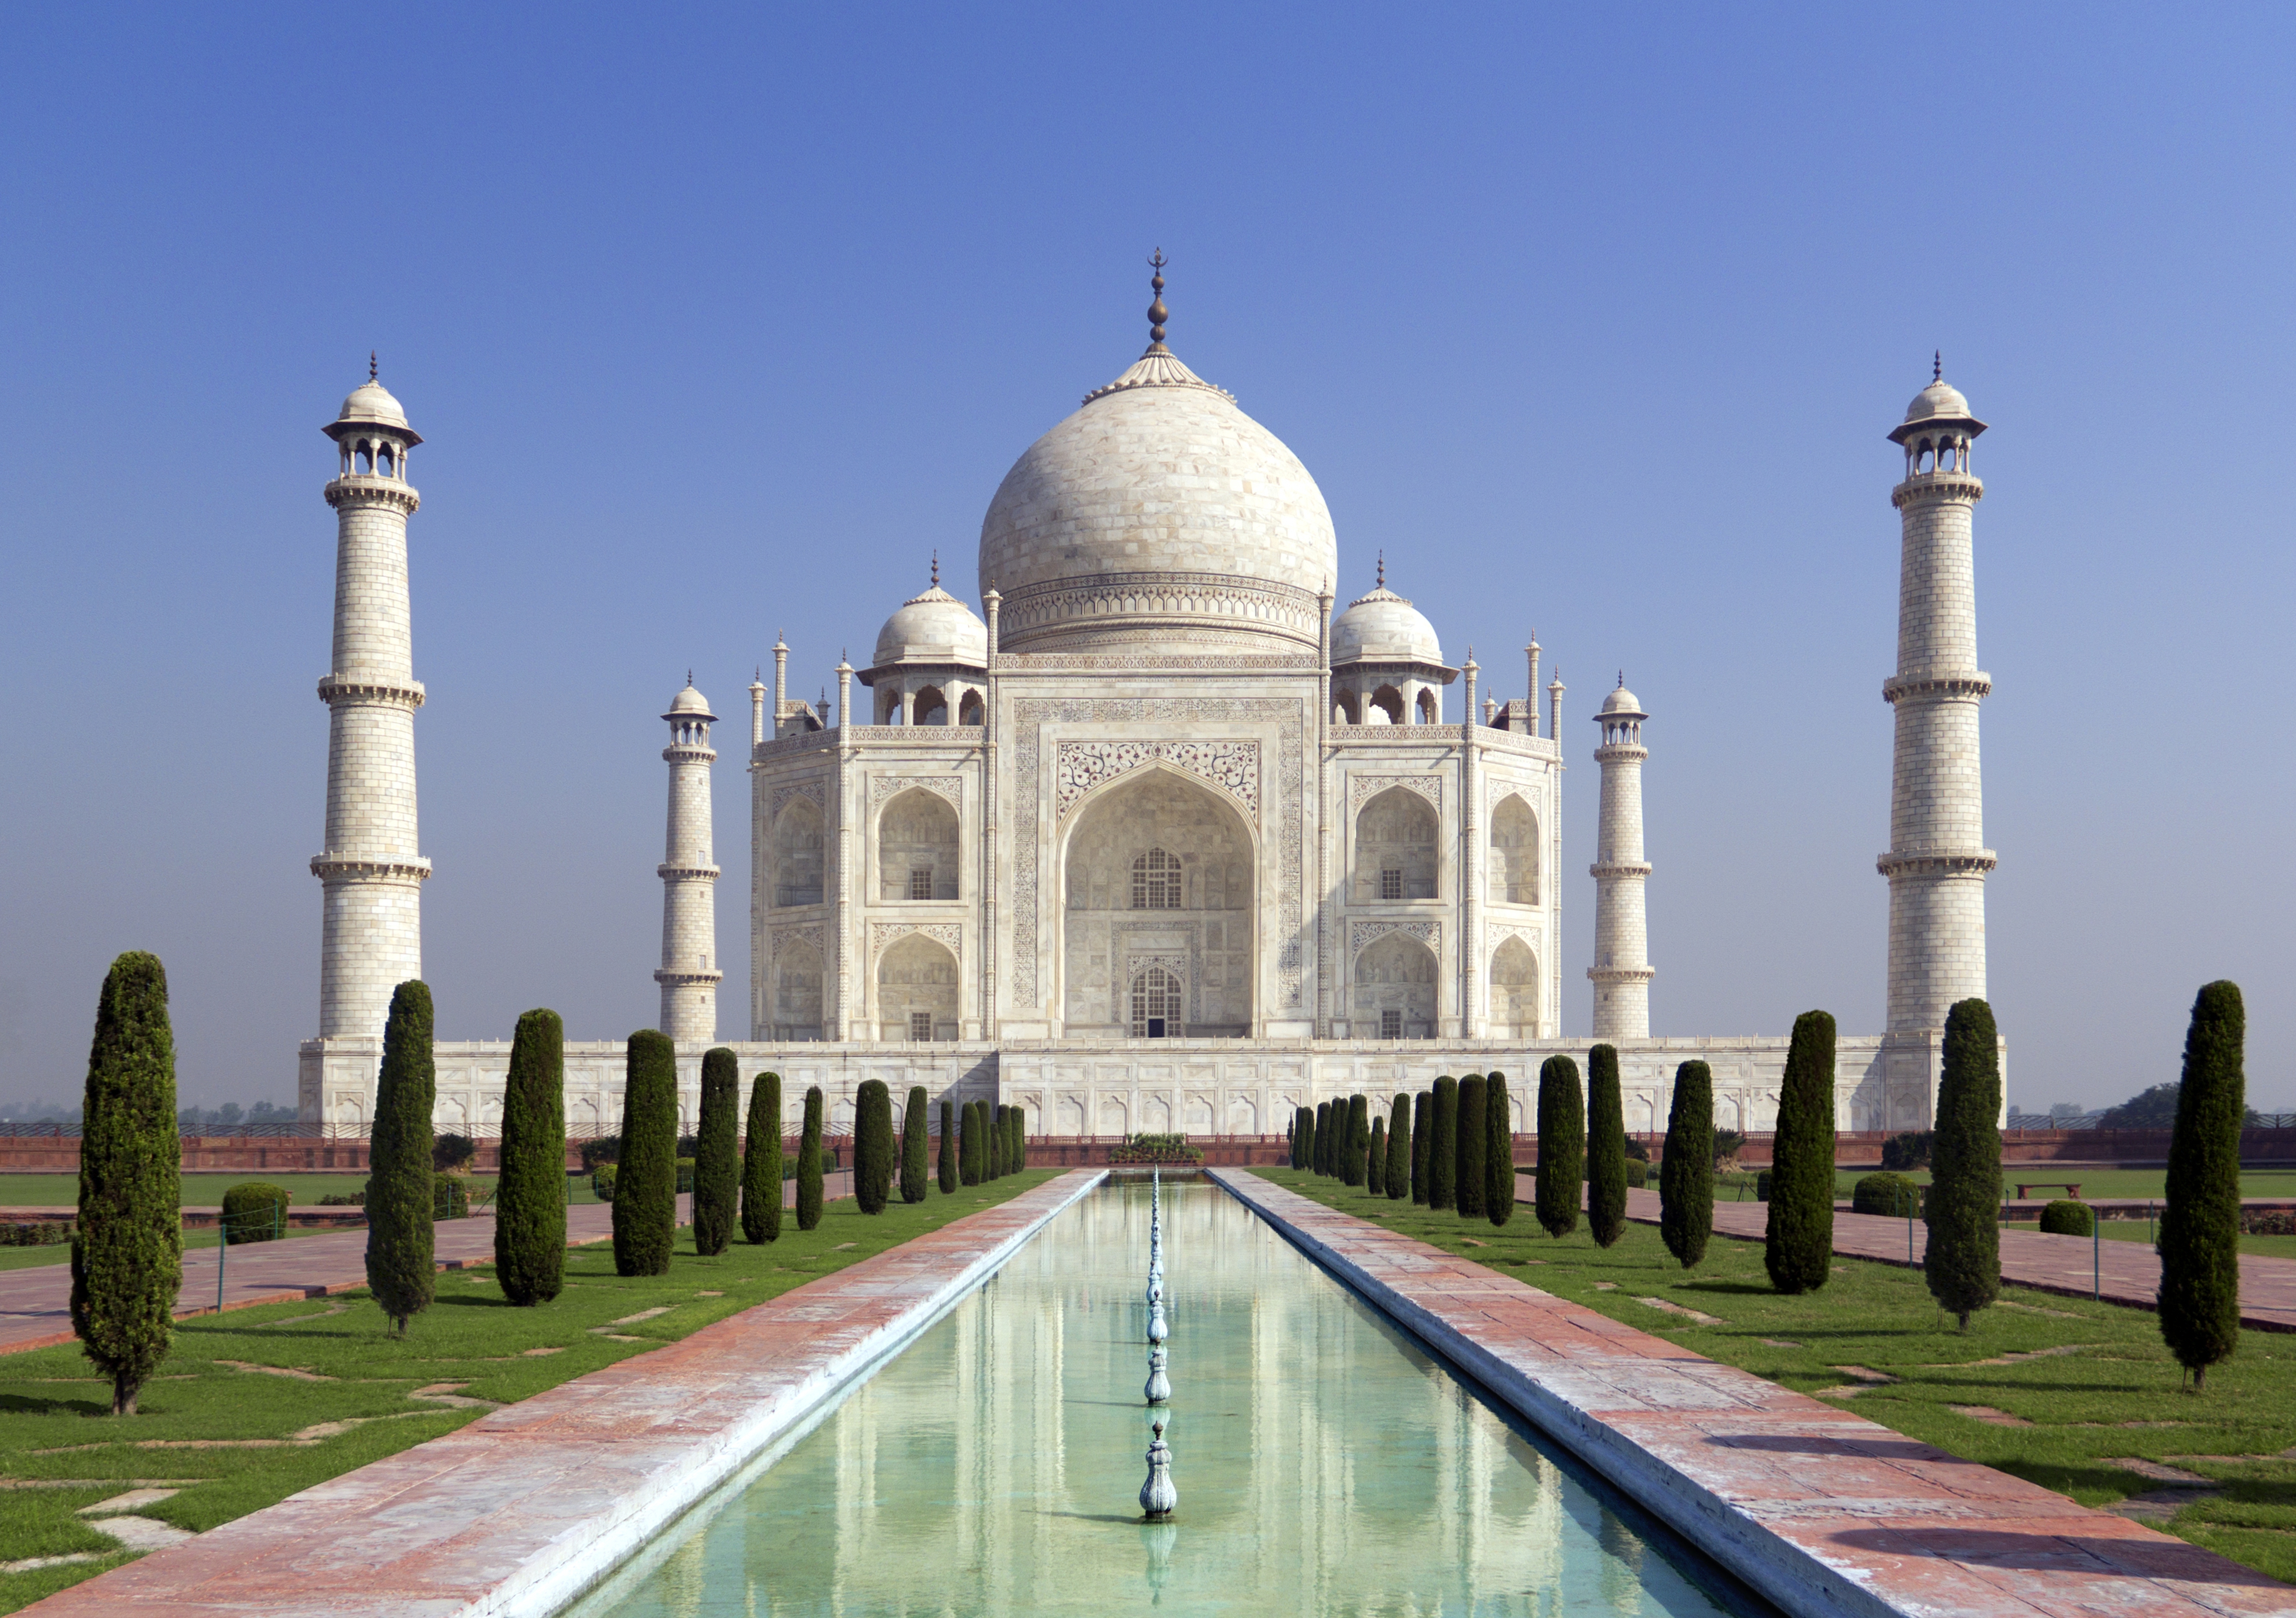 1527364画像をダウンロードタージマハル, インド, マンメイド, ドーム, 記念碑, 公園, モニュメント-壁紙とスクリーンセーバーを無料で